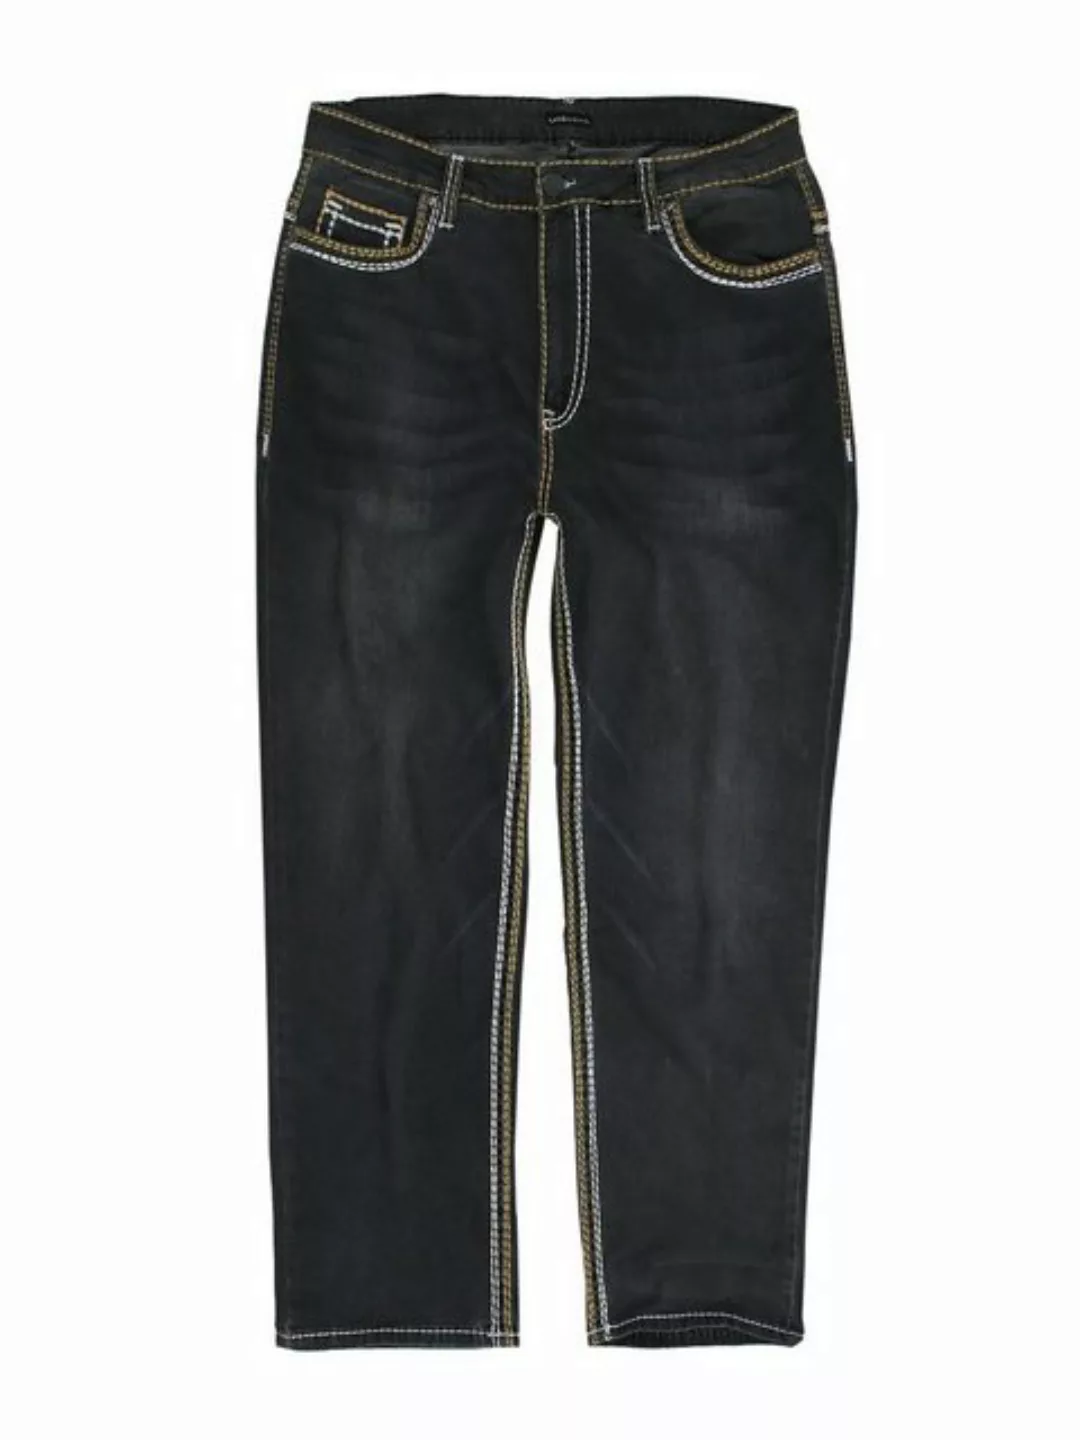 Lavecchia Comfort-fit-Jeans Übergrößen Herren Jeanshose LV-503 Stretch mit günstig online kaufen